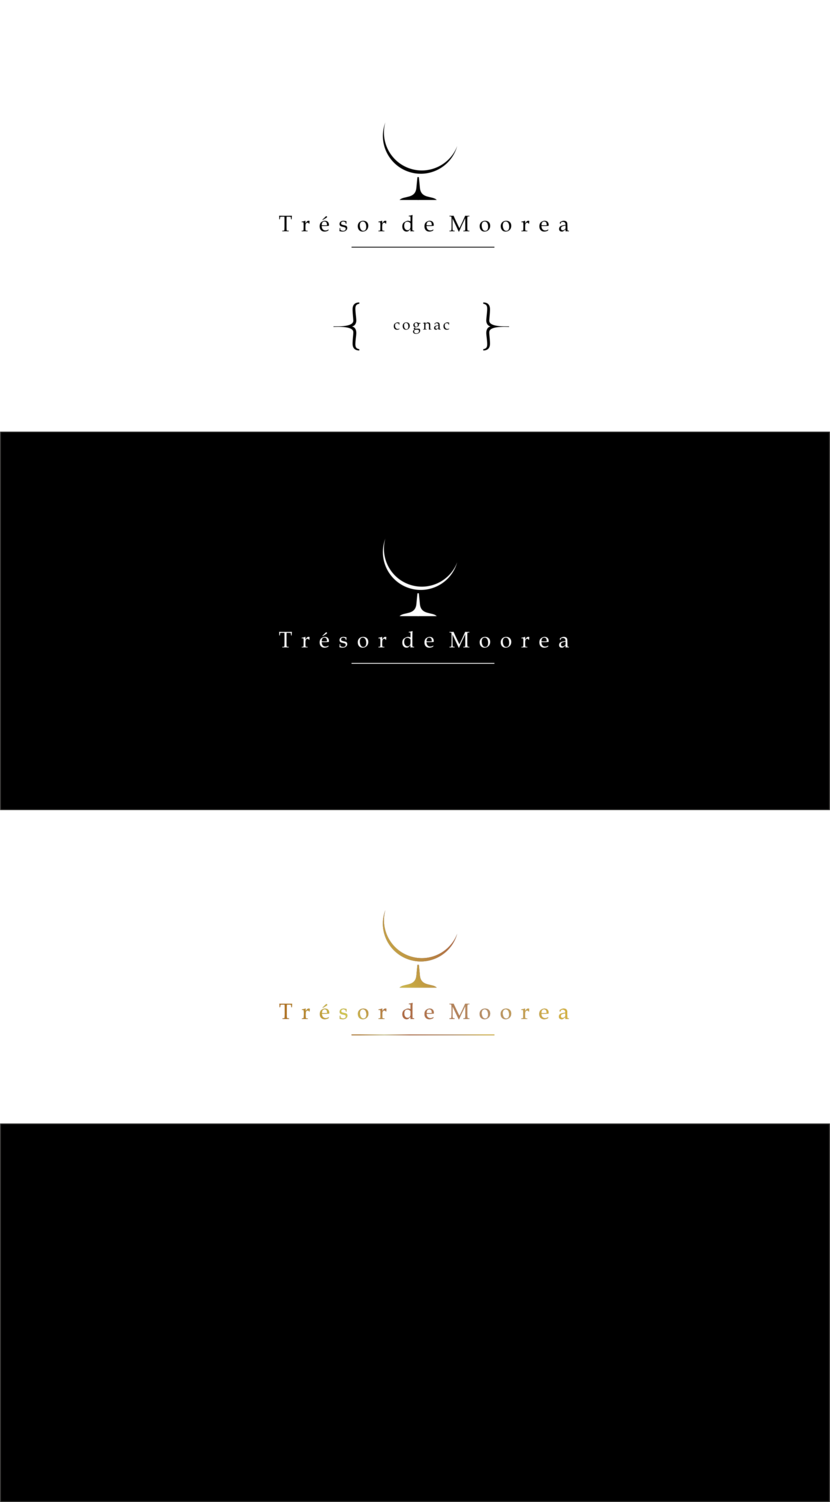 logo - Логотип для производителя коньяков во Франции "Trésor de Moorea"